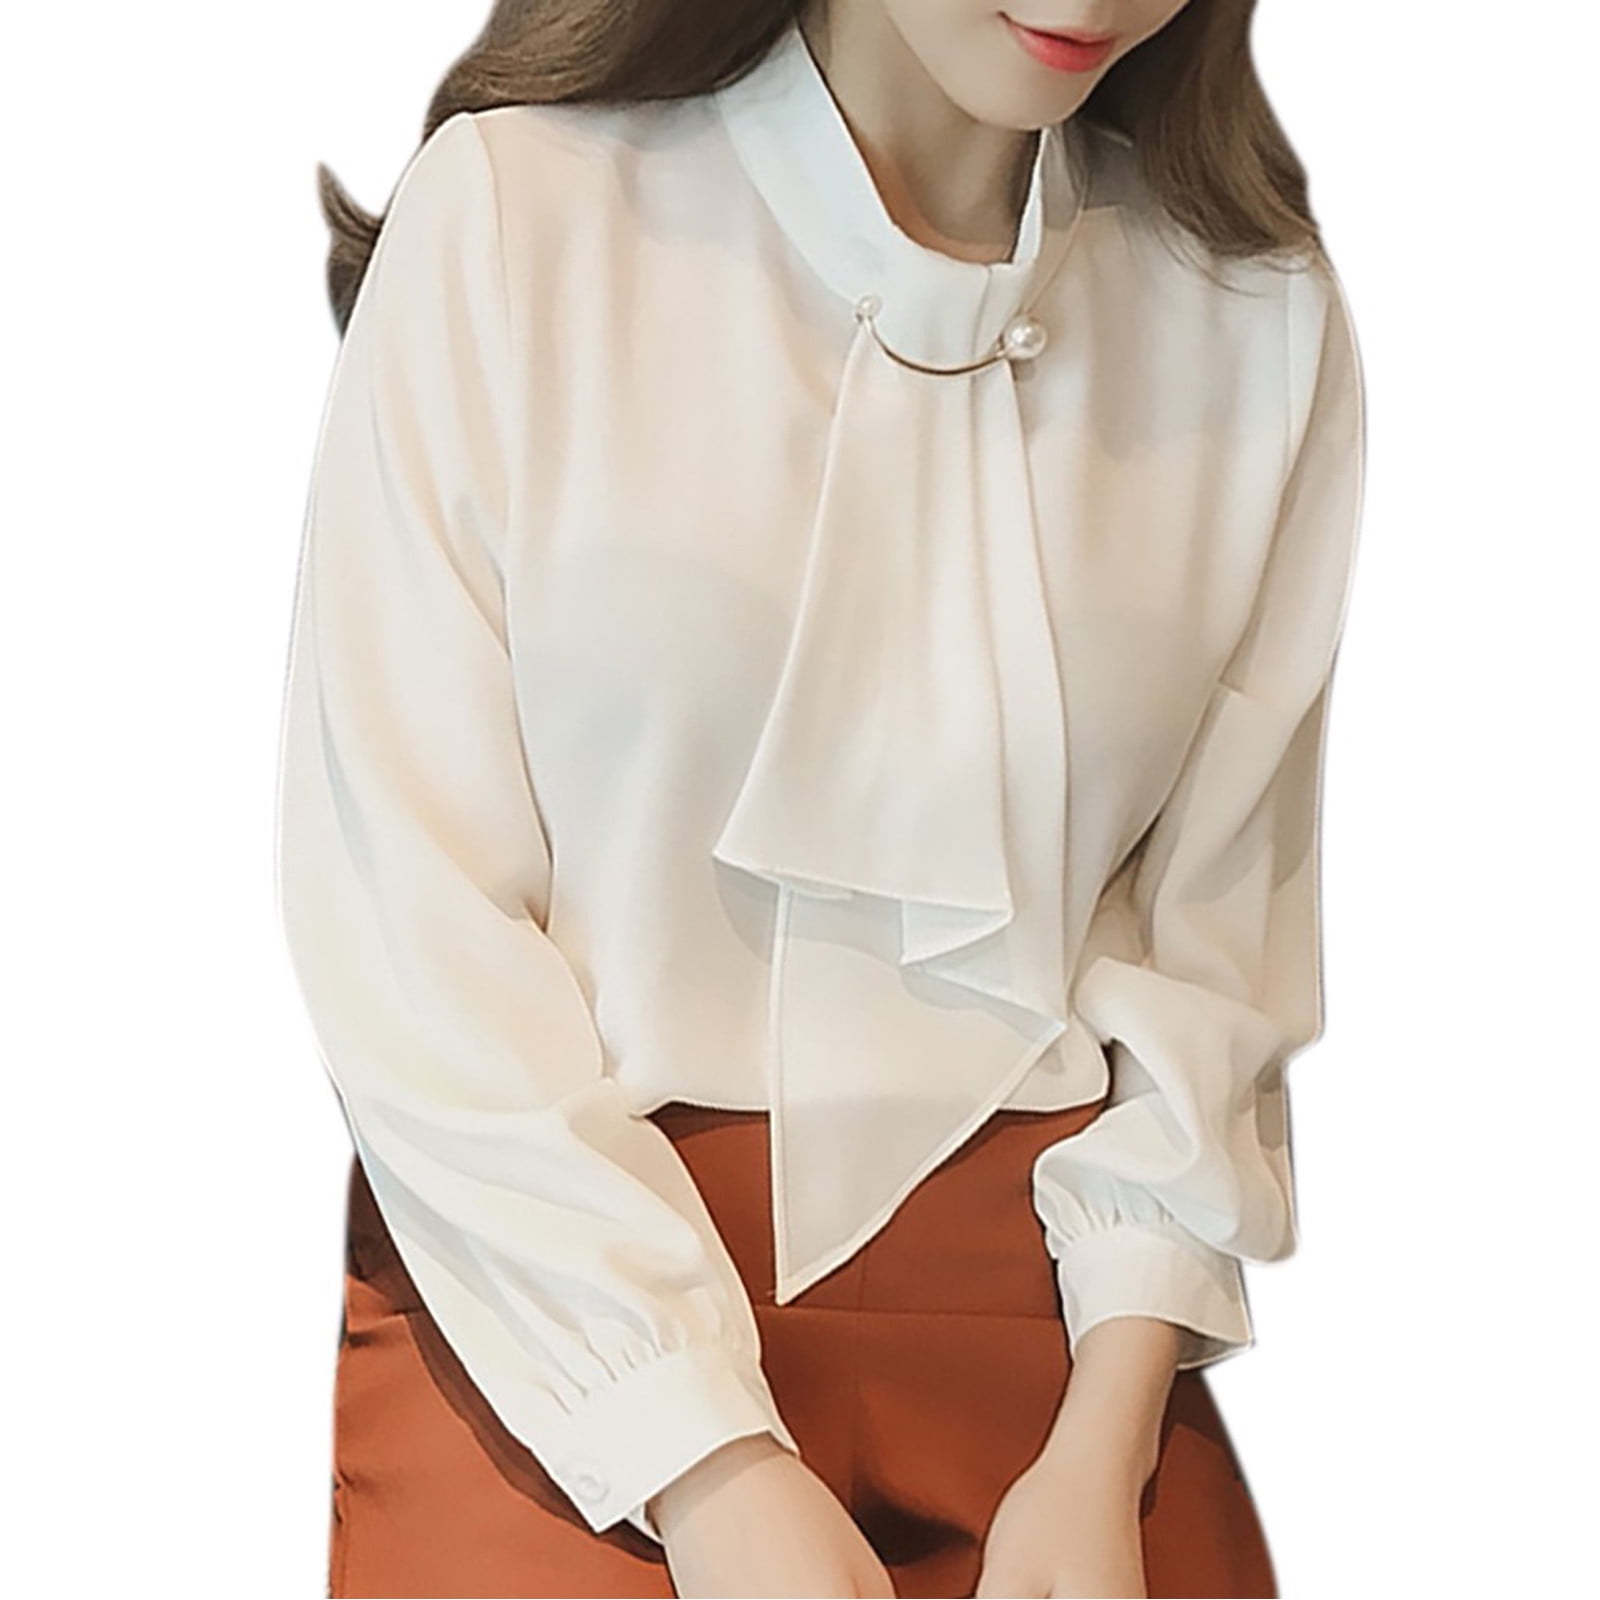 KmaiSchai Long Sleeve Shirts For Women Womens Casual Button Shirts Casual Shirt Spring Shirt Solid Color Ring Button Sleeve Long Sleeve Shirt Chiffon Shirt Top Tan Work Top Women -